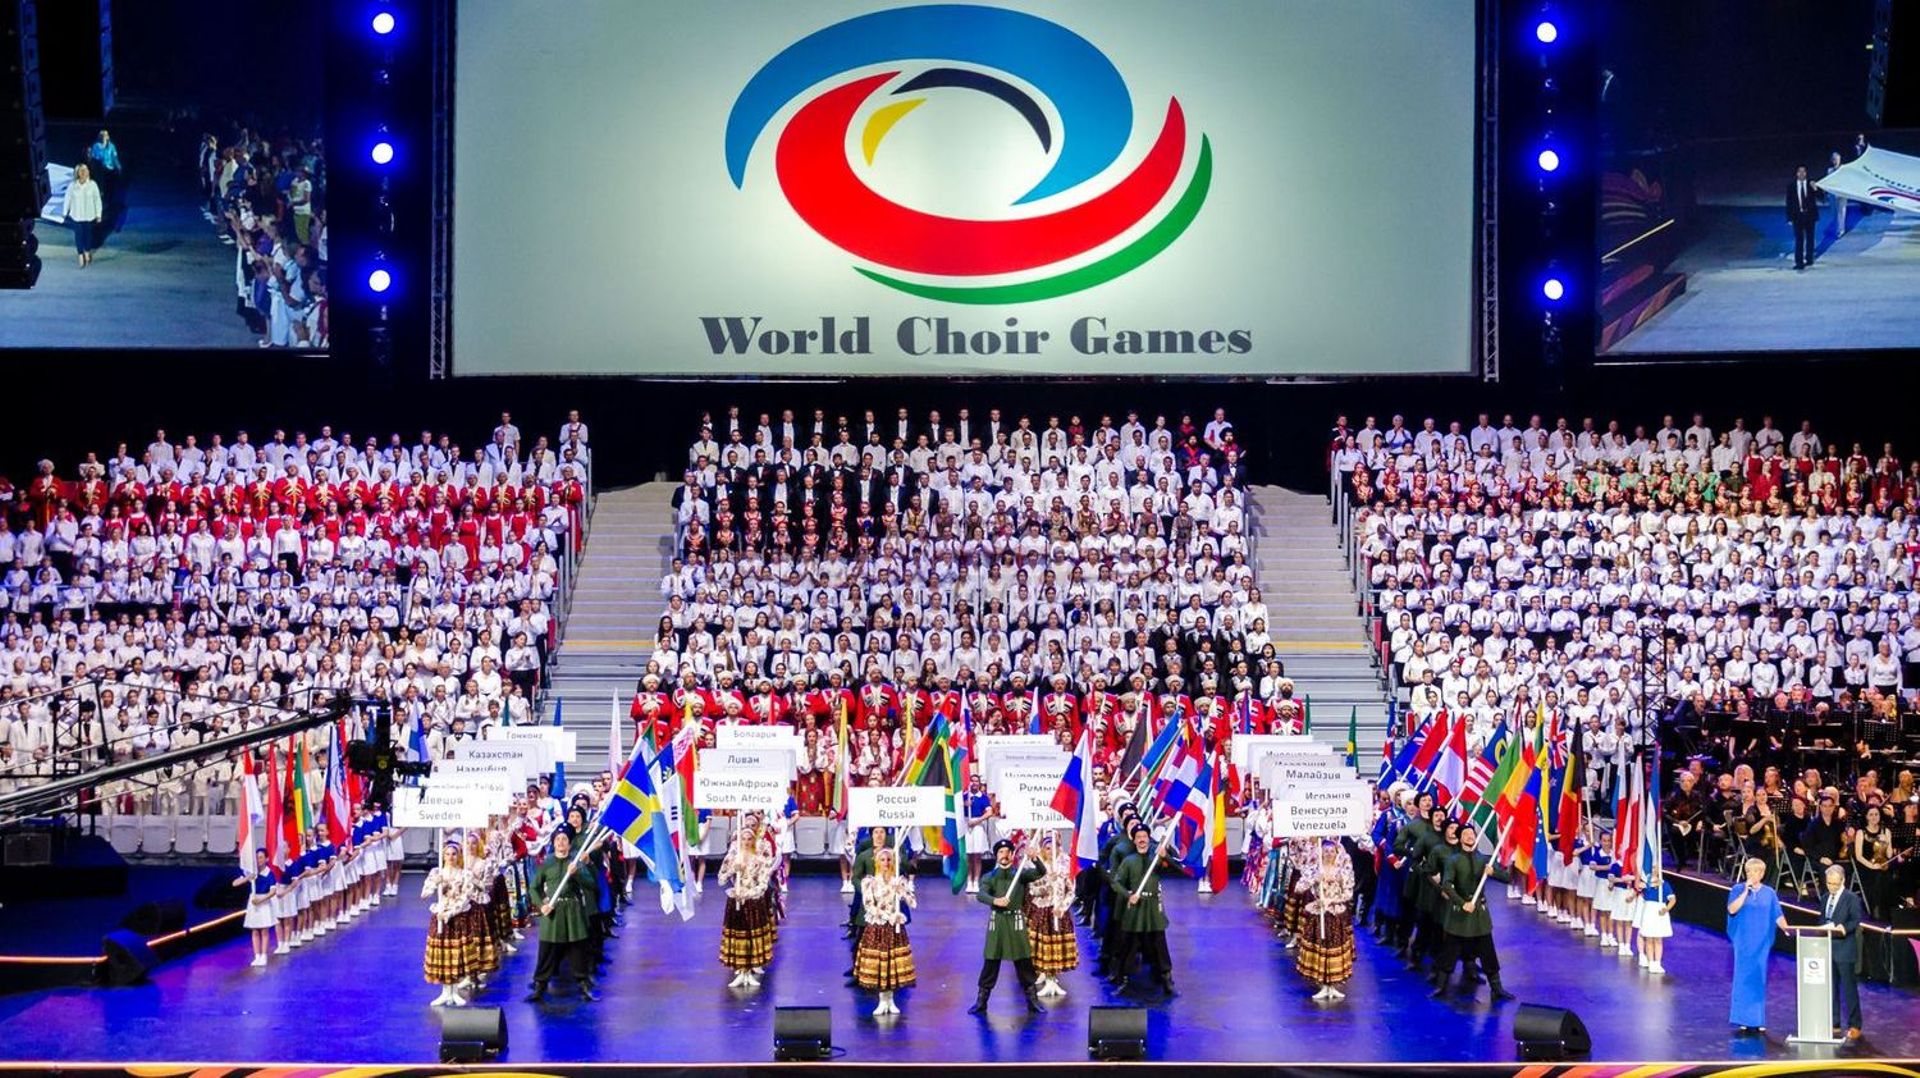 Les World Choir Games 2020, Jeux Olympiques des Chorales, se dérouleront à Gand et à Anvers